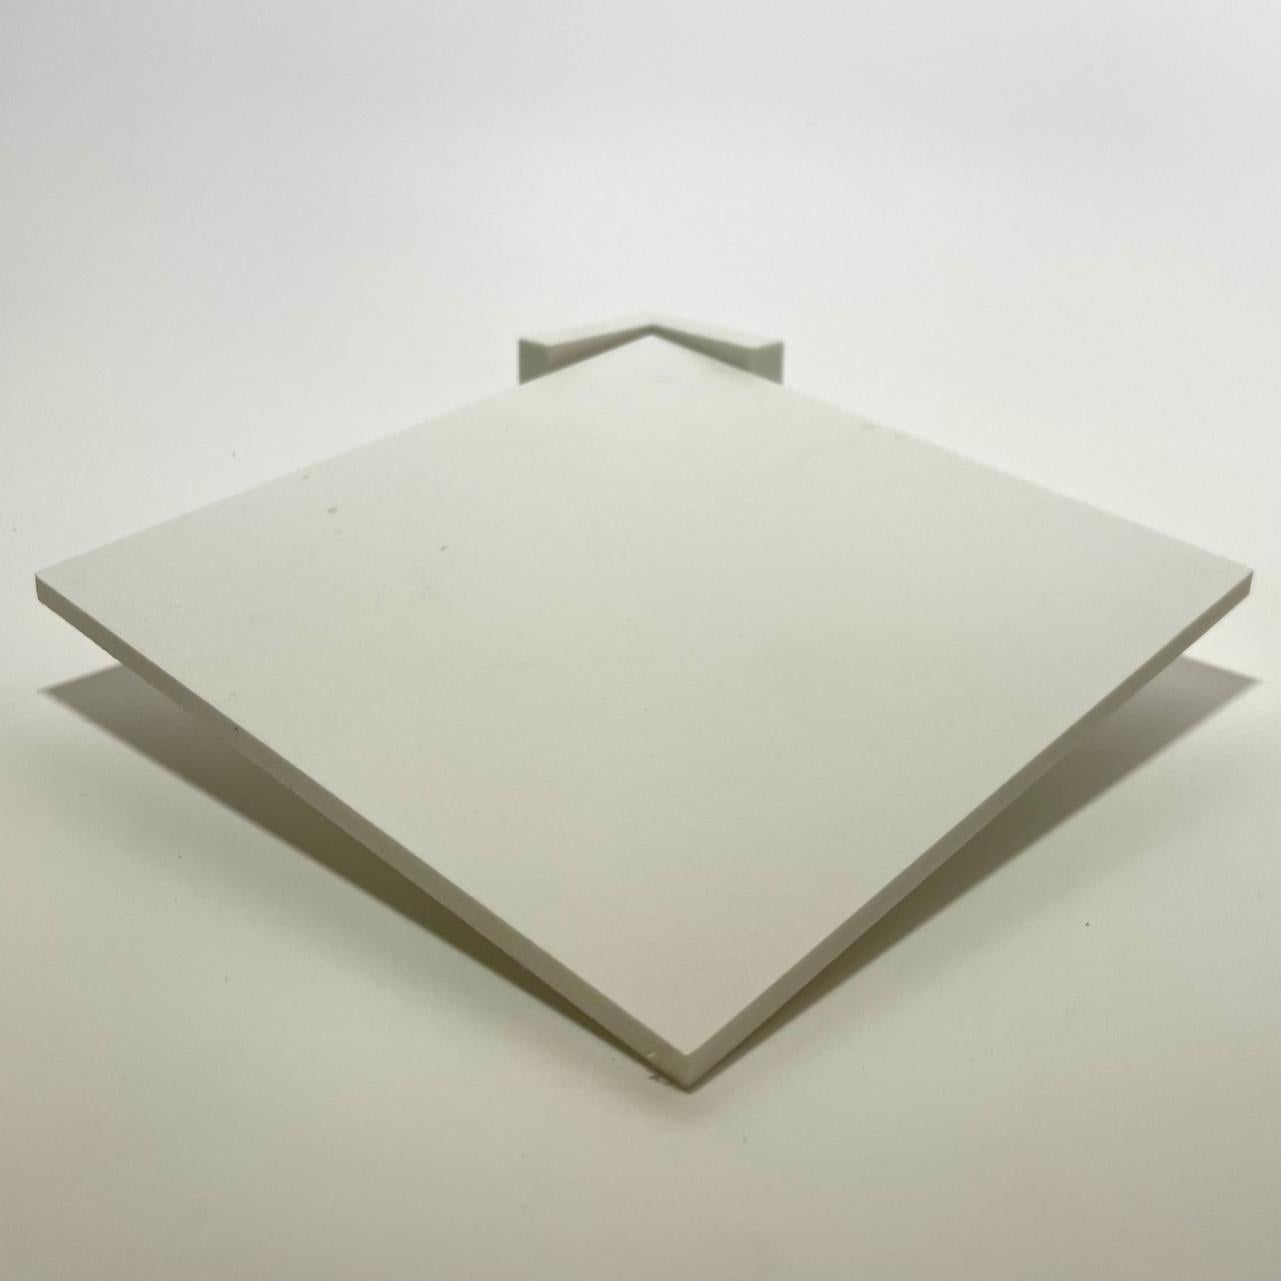 Idéal pour impression ou revêtements Épaisseur Léger et résistant Panneau Forex PVC blanc Anti-rayures Différentes épaisseurs et dimensions Haute qualité 